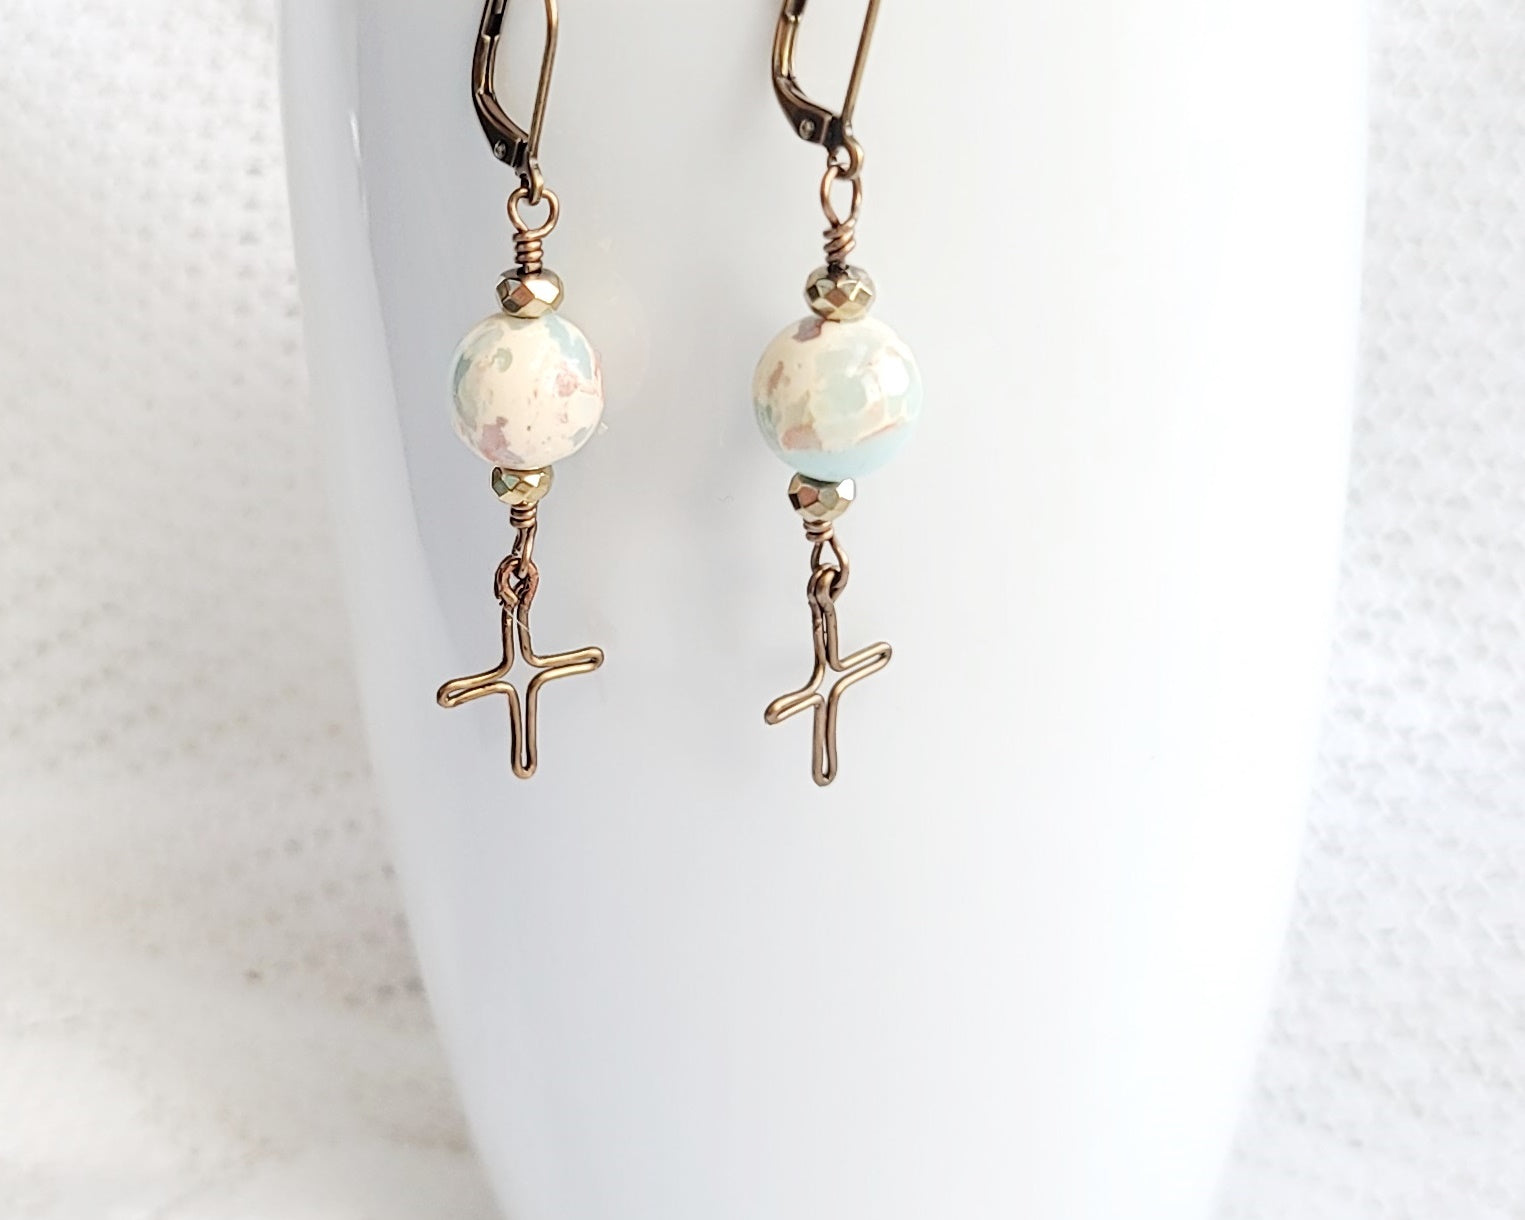 Heavenly Sky Cross Earrings, Long Cross Earrings made with Imperial Jasper, Sea Sediment Jasper, Hematite and Antique Brass